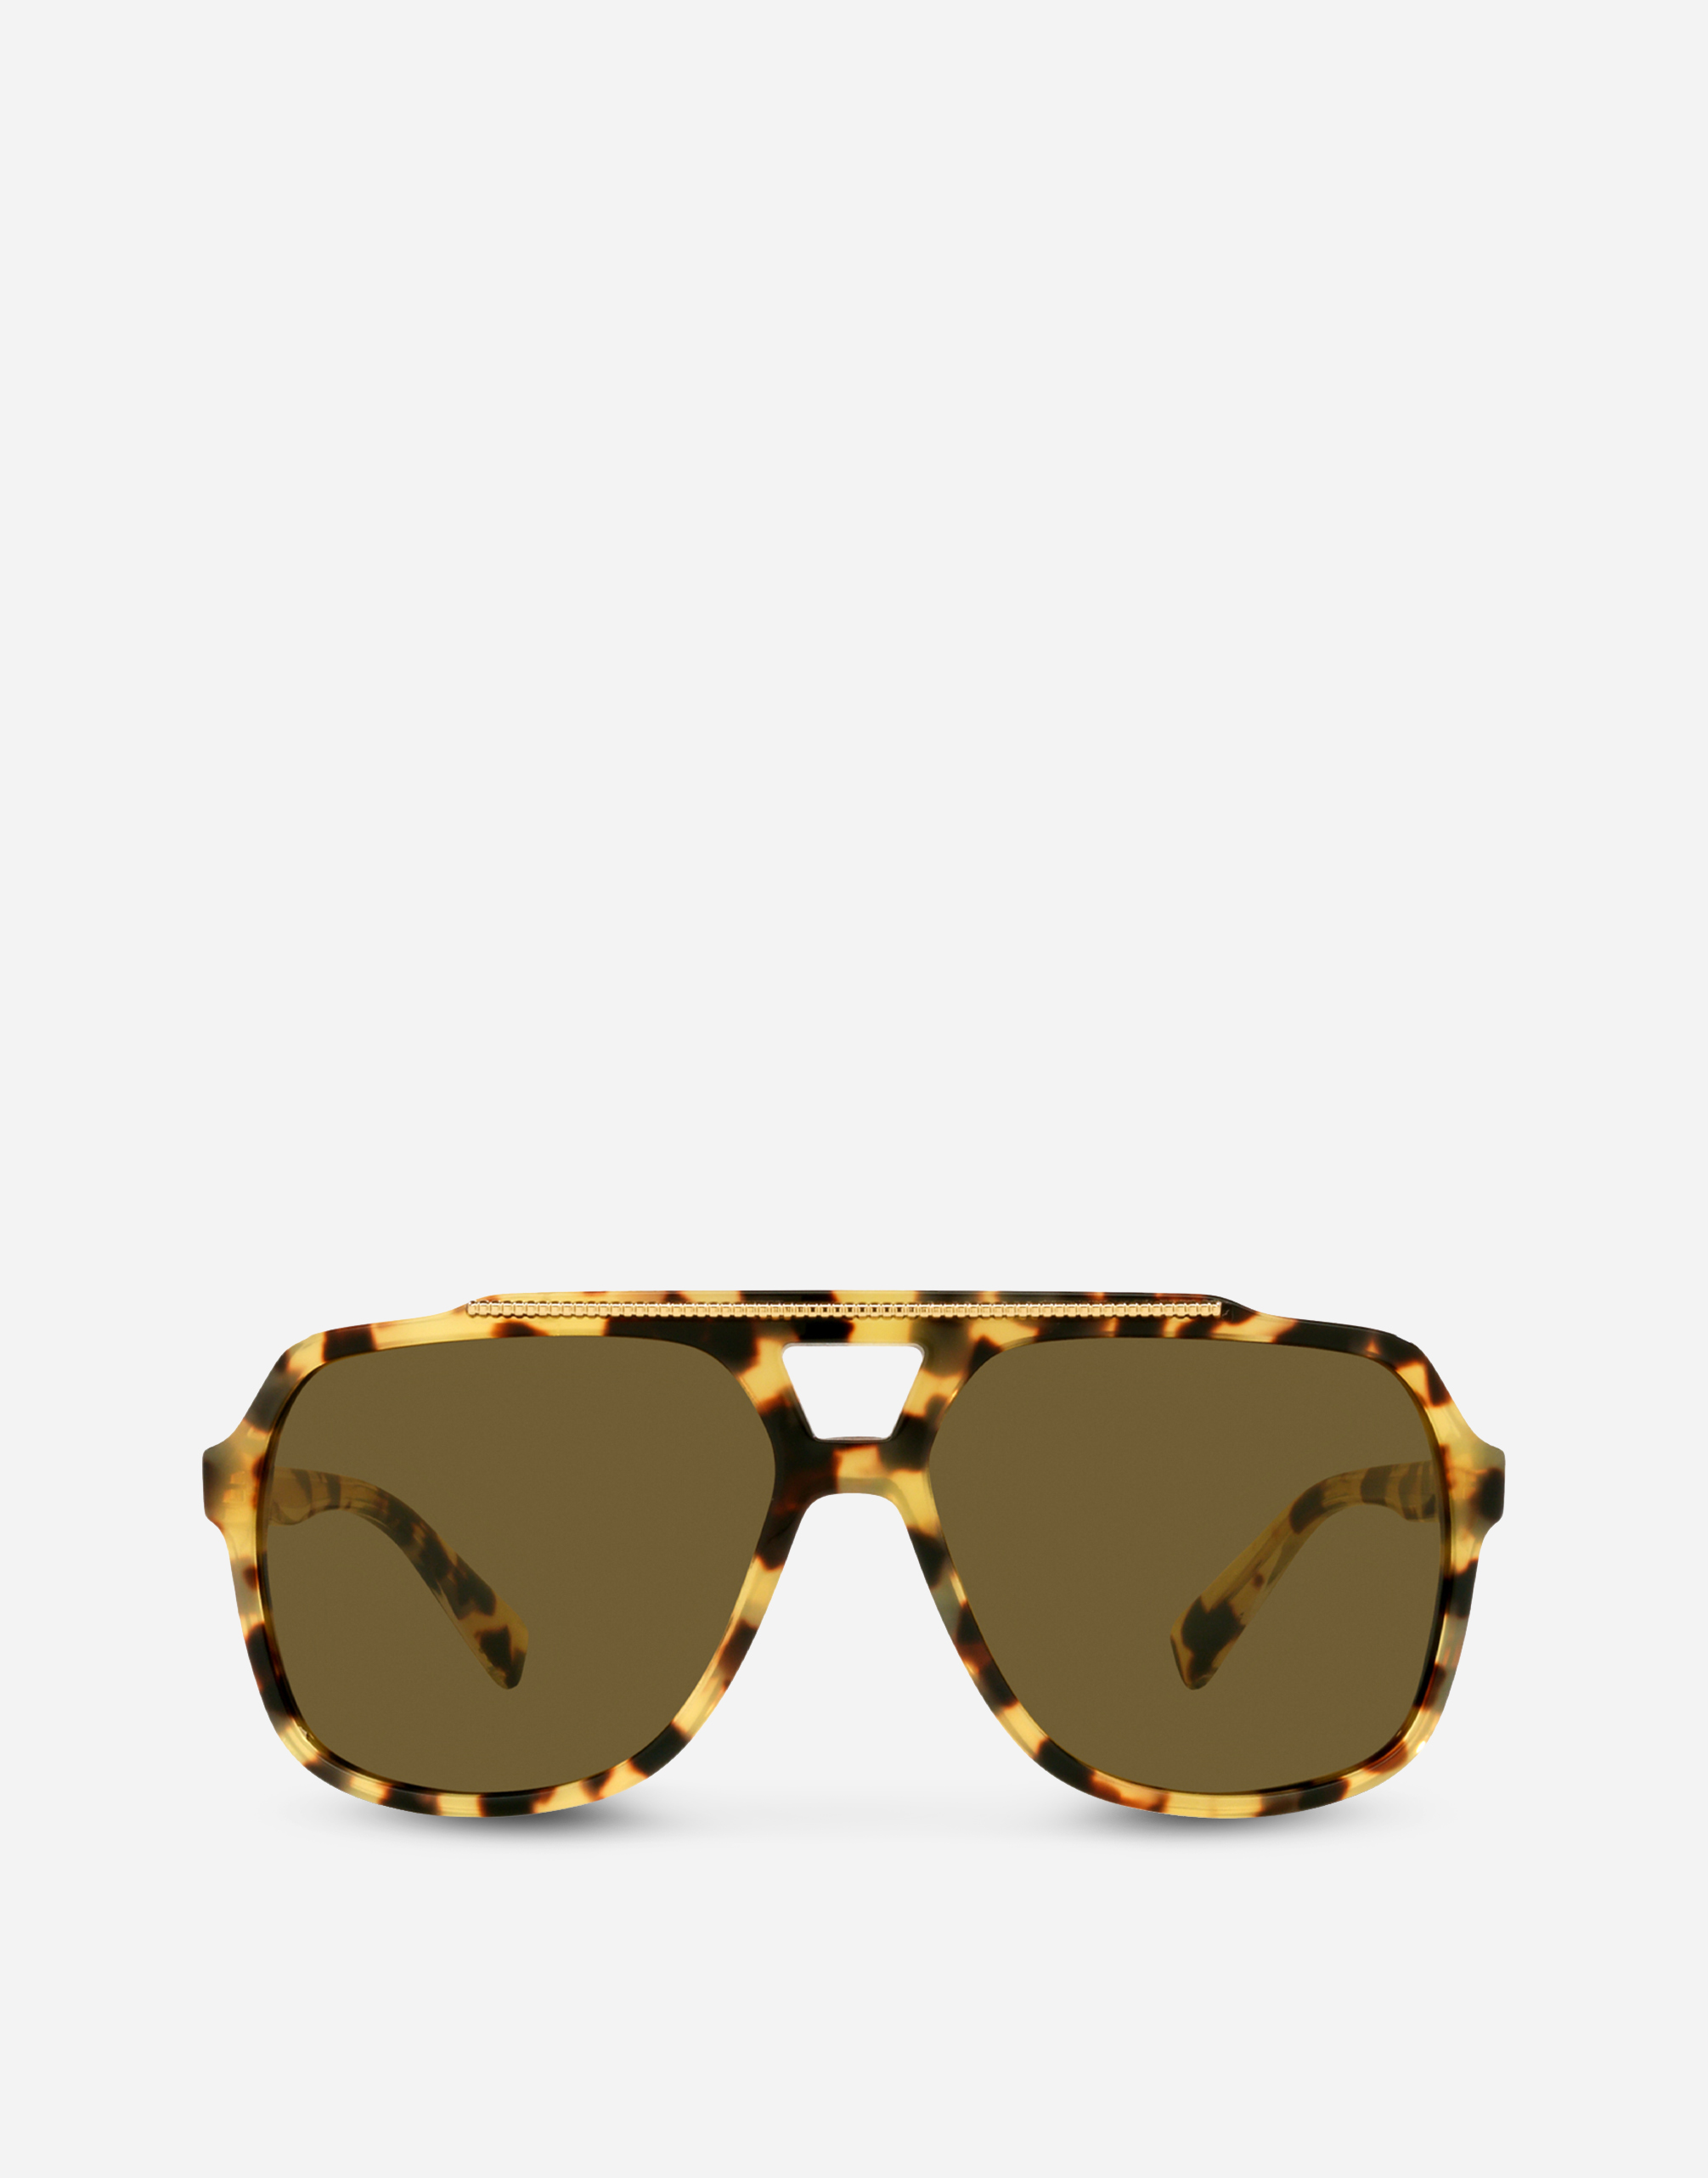 Gros grain sunglasses in Yellow havana